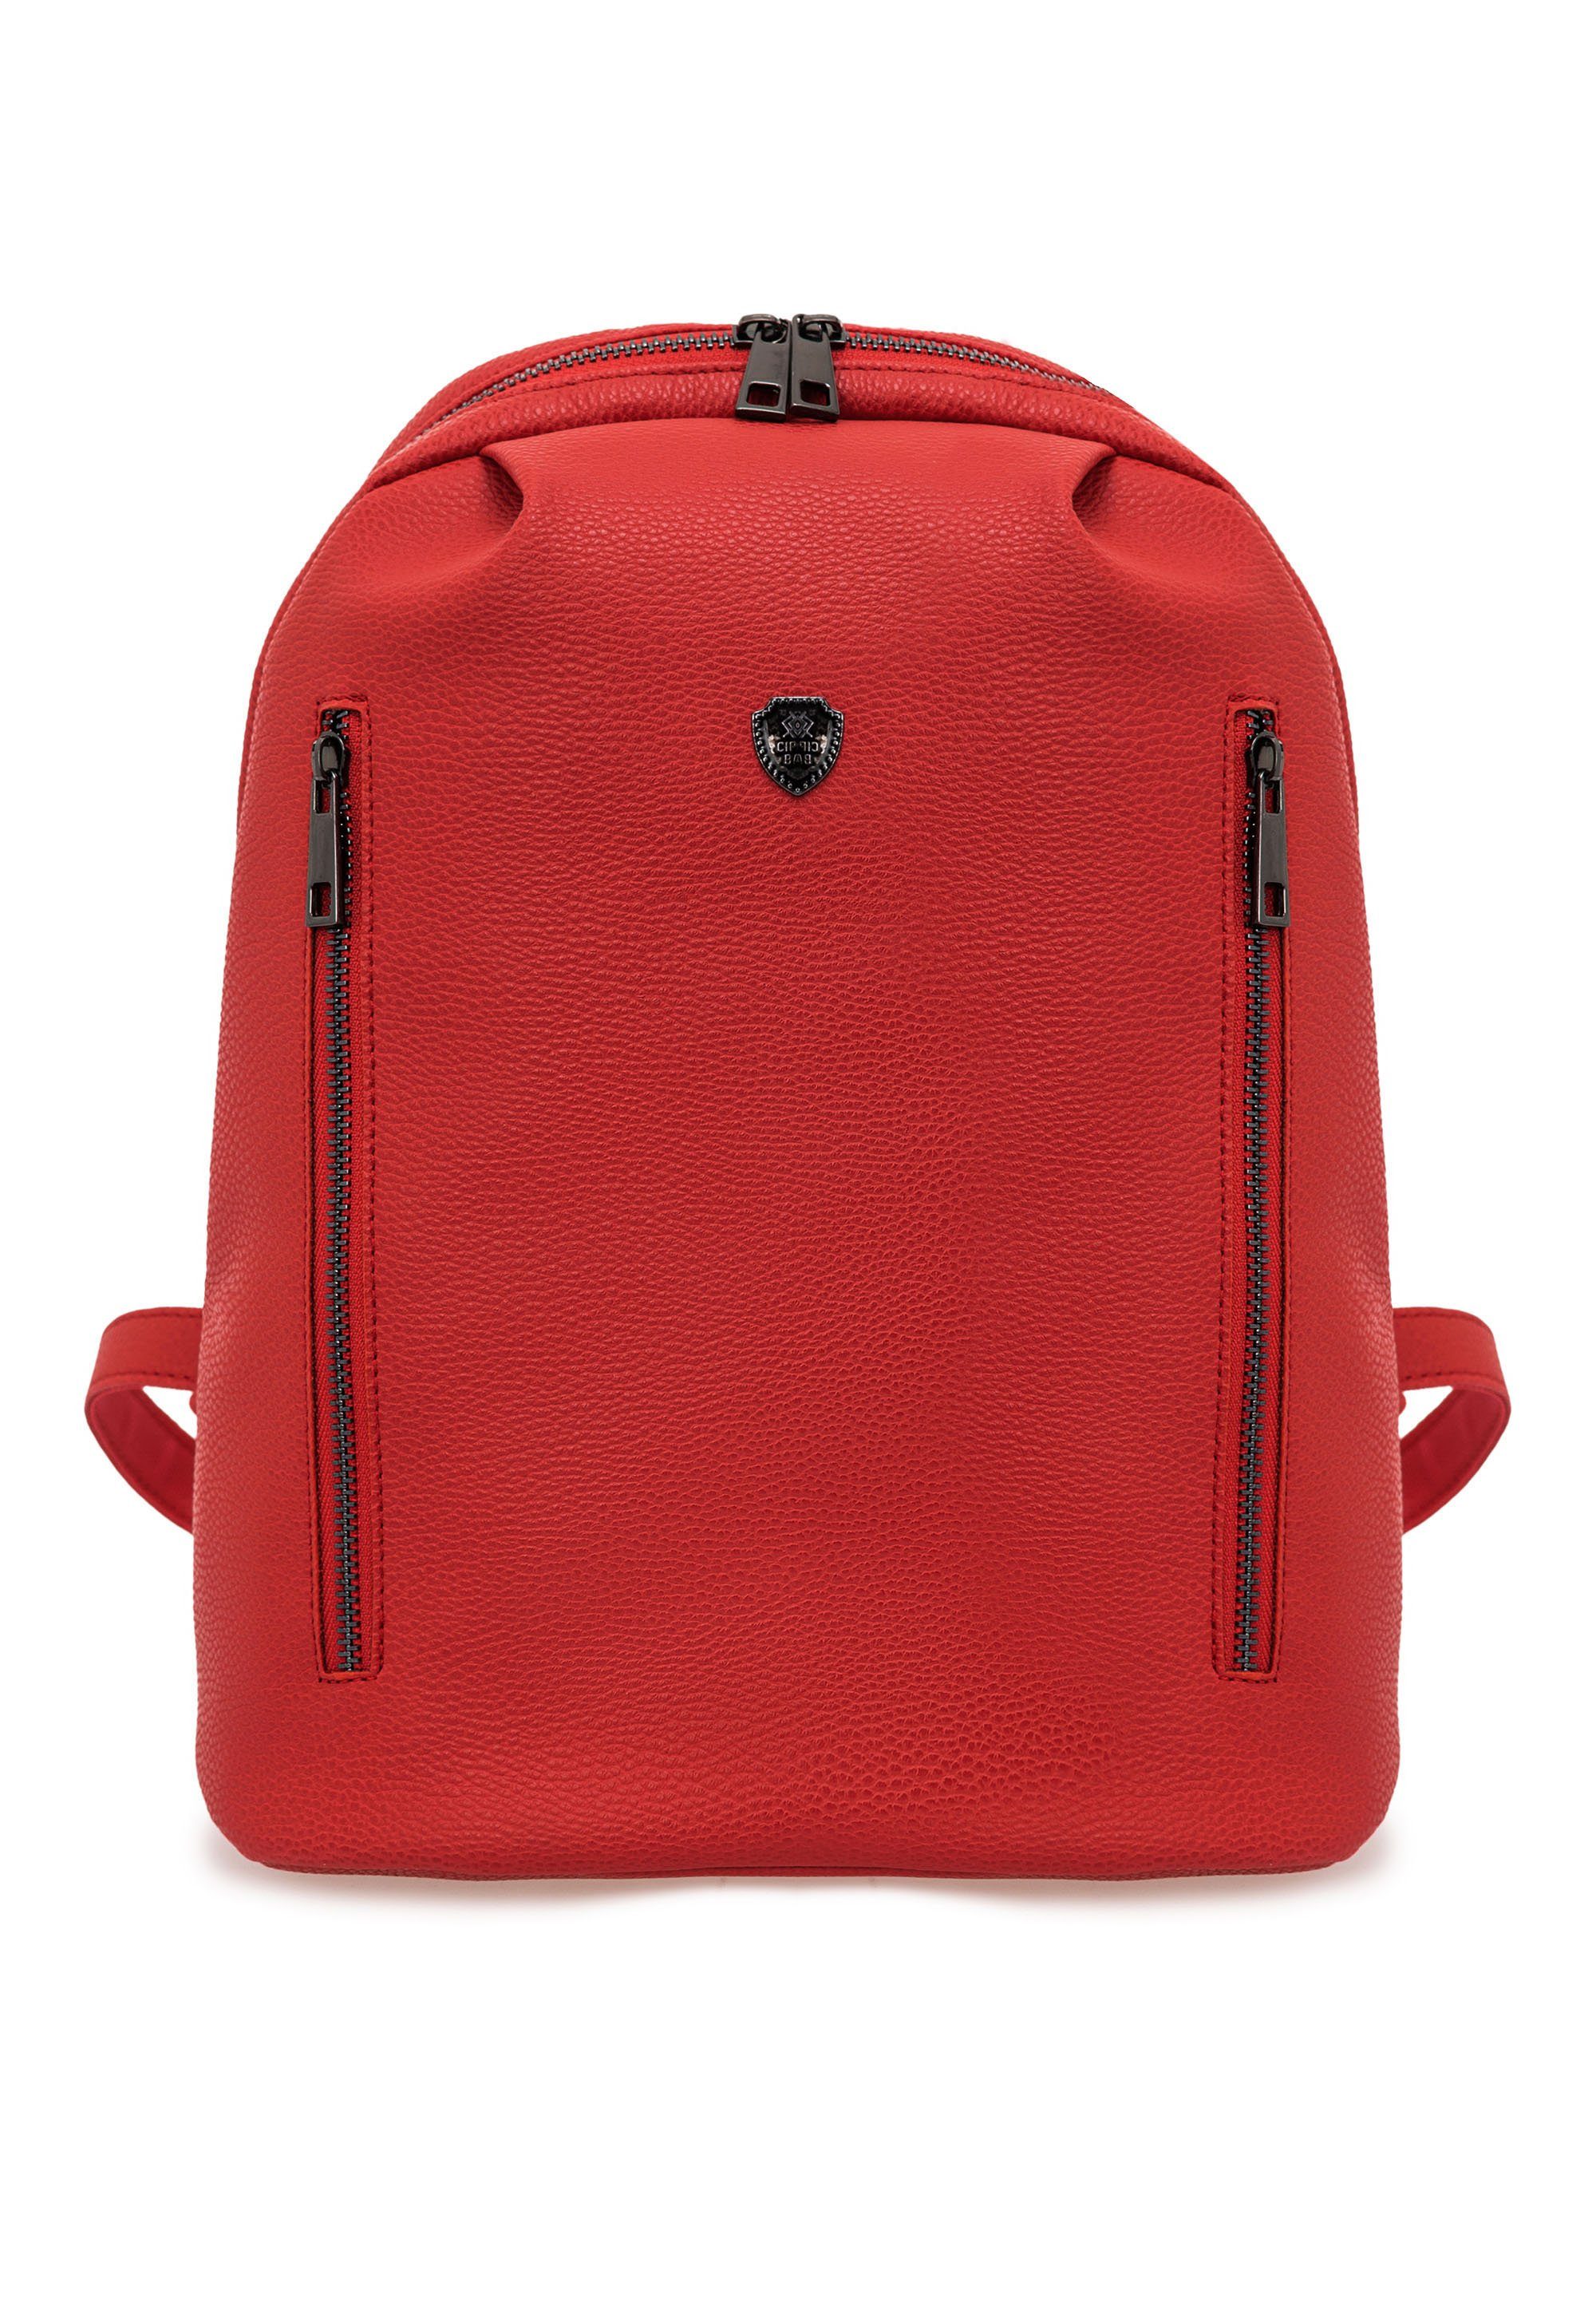 Cipo & Baxx Cityrucksack, mit praktischen Seitentaschen rot